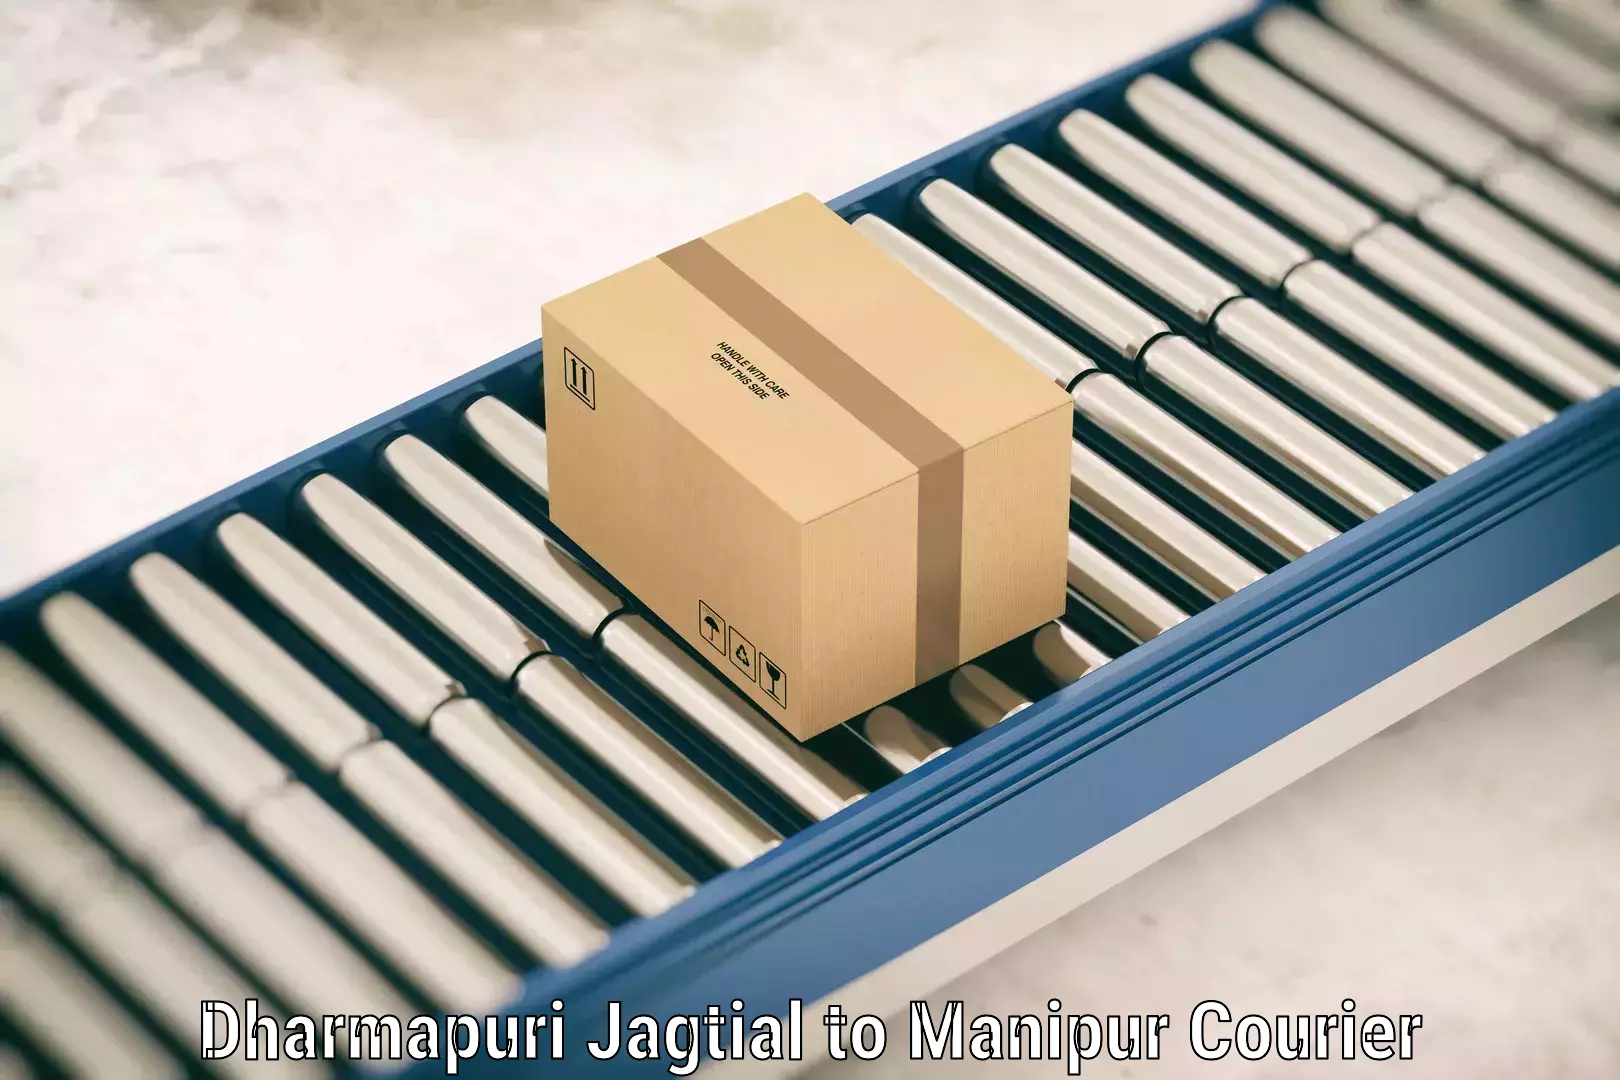 Baggage delivery solutions Dharmapuri Jagtial to Chandel